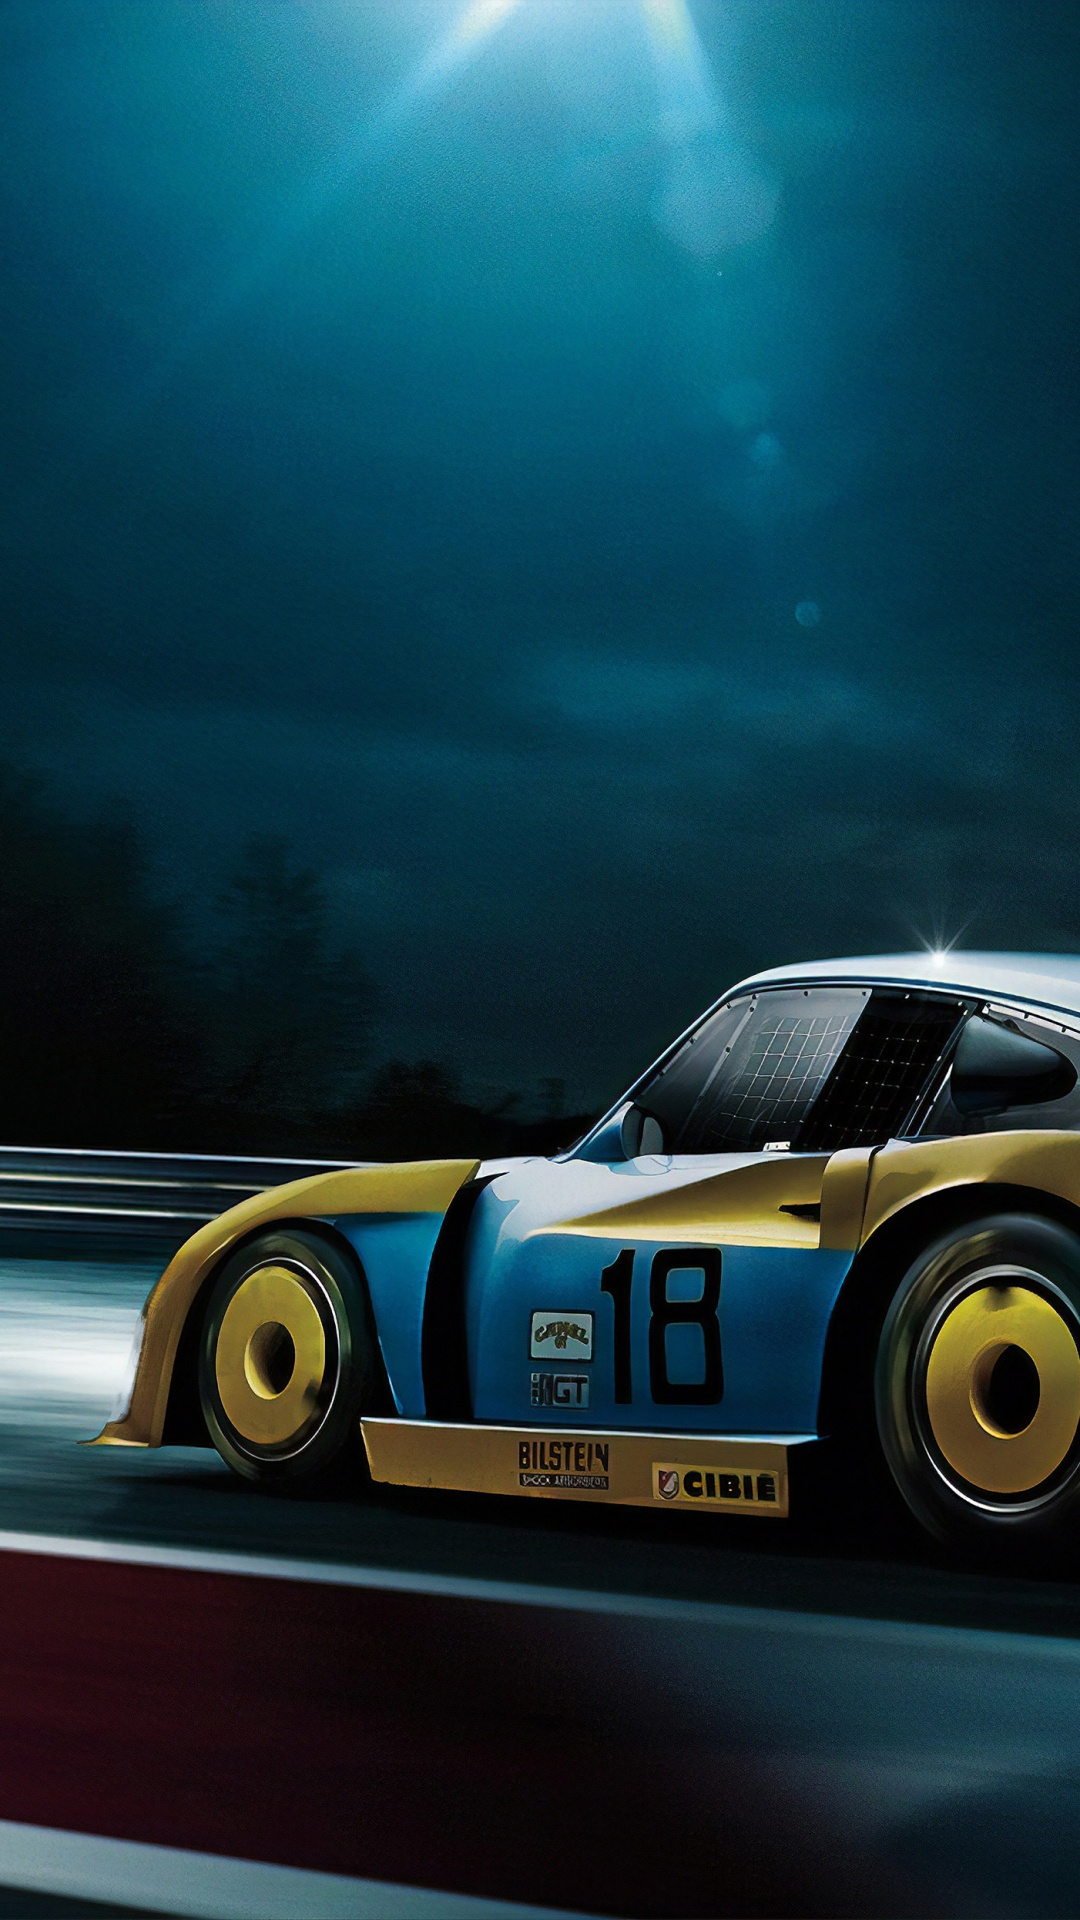 Porsche 911 Blanche et Bleue Sur Route la Nuit. Wallpaper in 1080x1920 Resolution